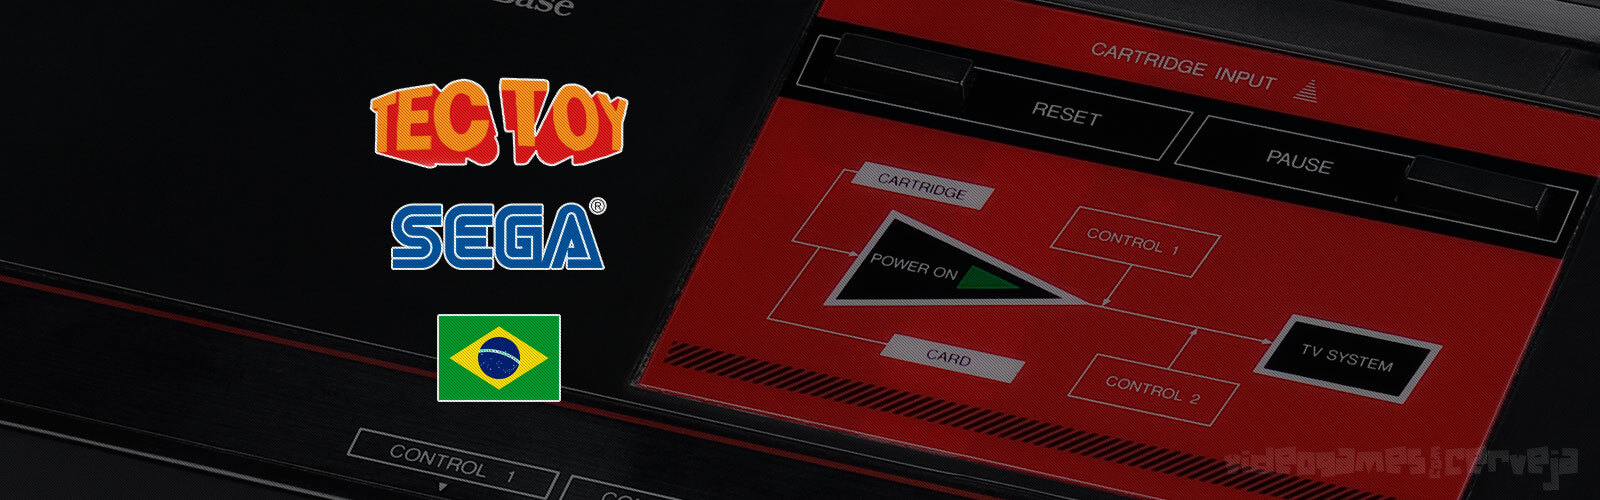 34 jogos de Master System exclusivos da Tectoy no Brasil Cover